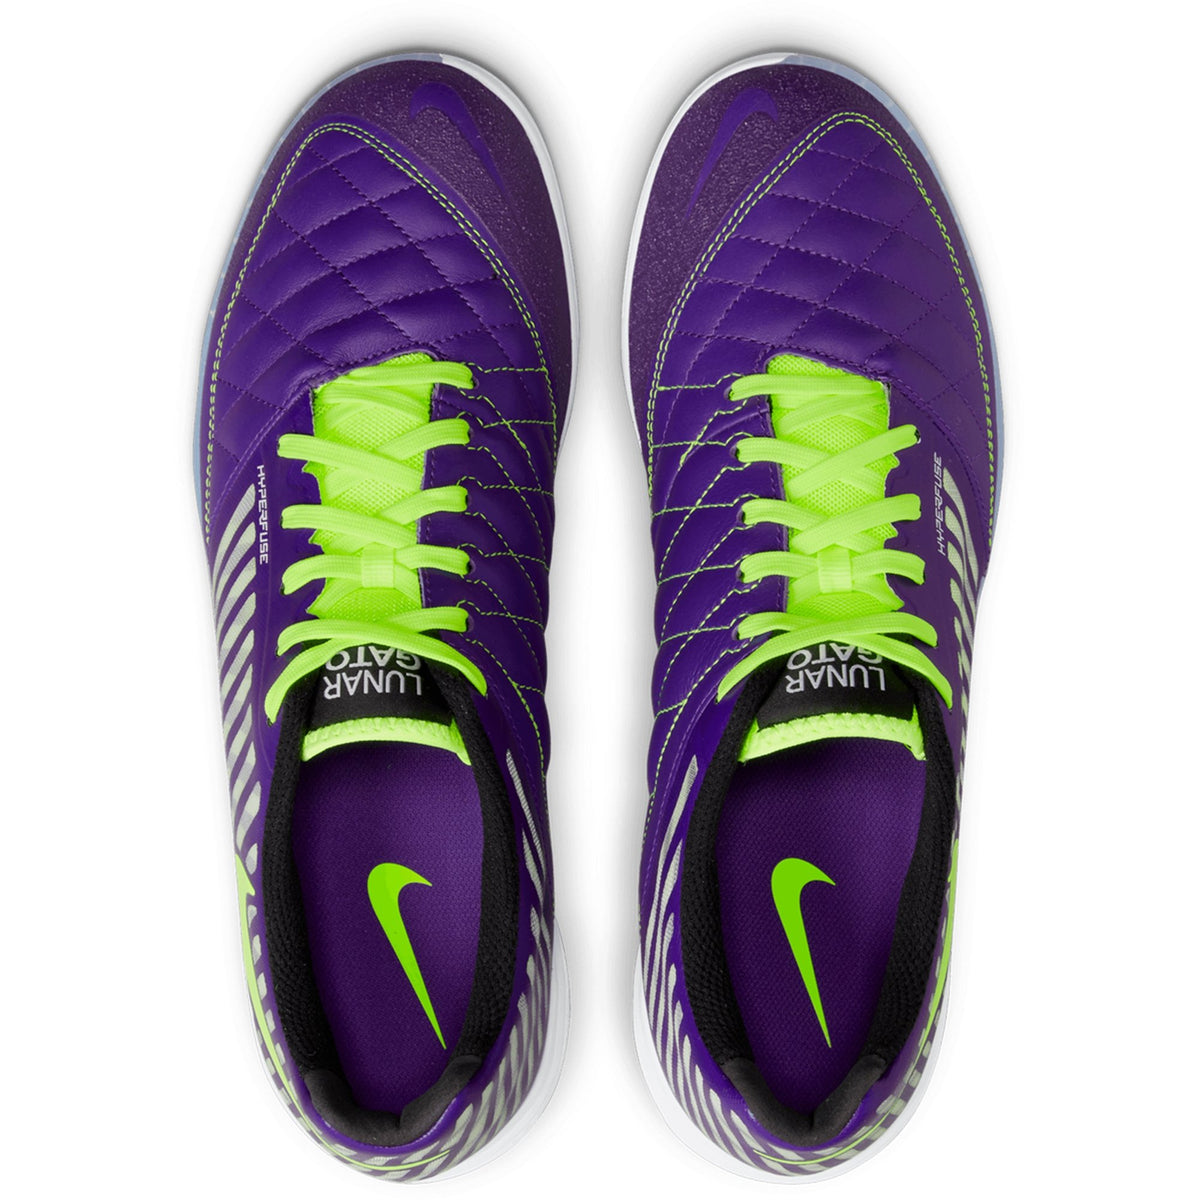 Nike Lunar II Indoor Soccer Shoes: Electro Purple/Volt/Black/White 580456-570 – Soccer USA